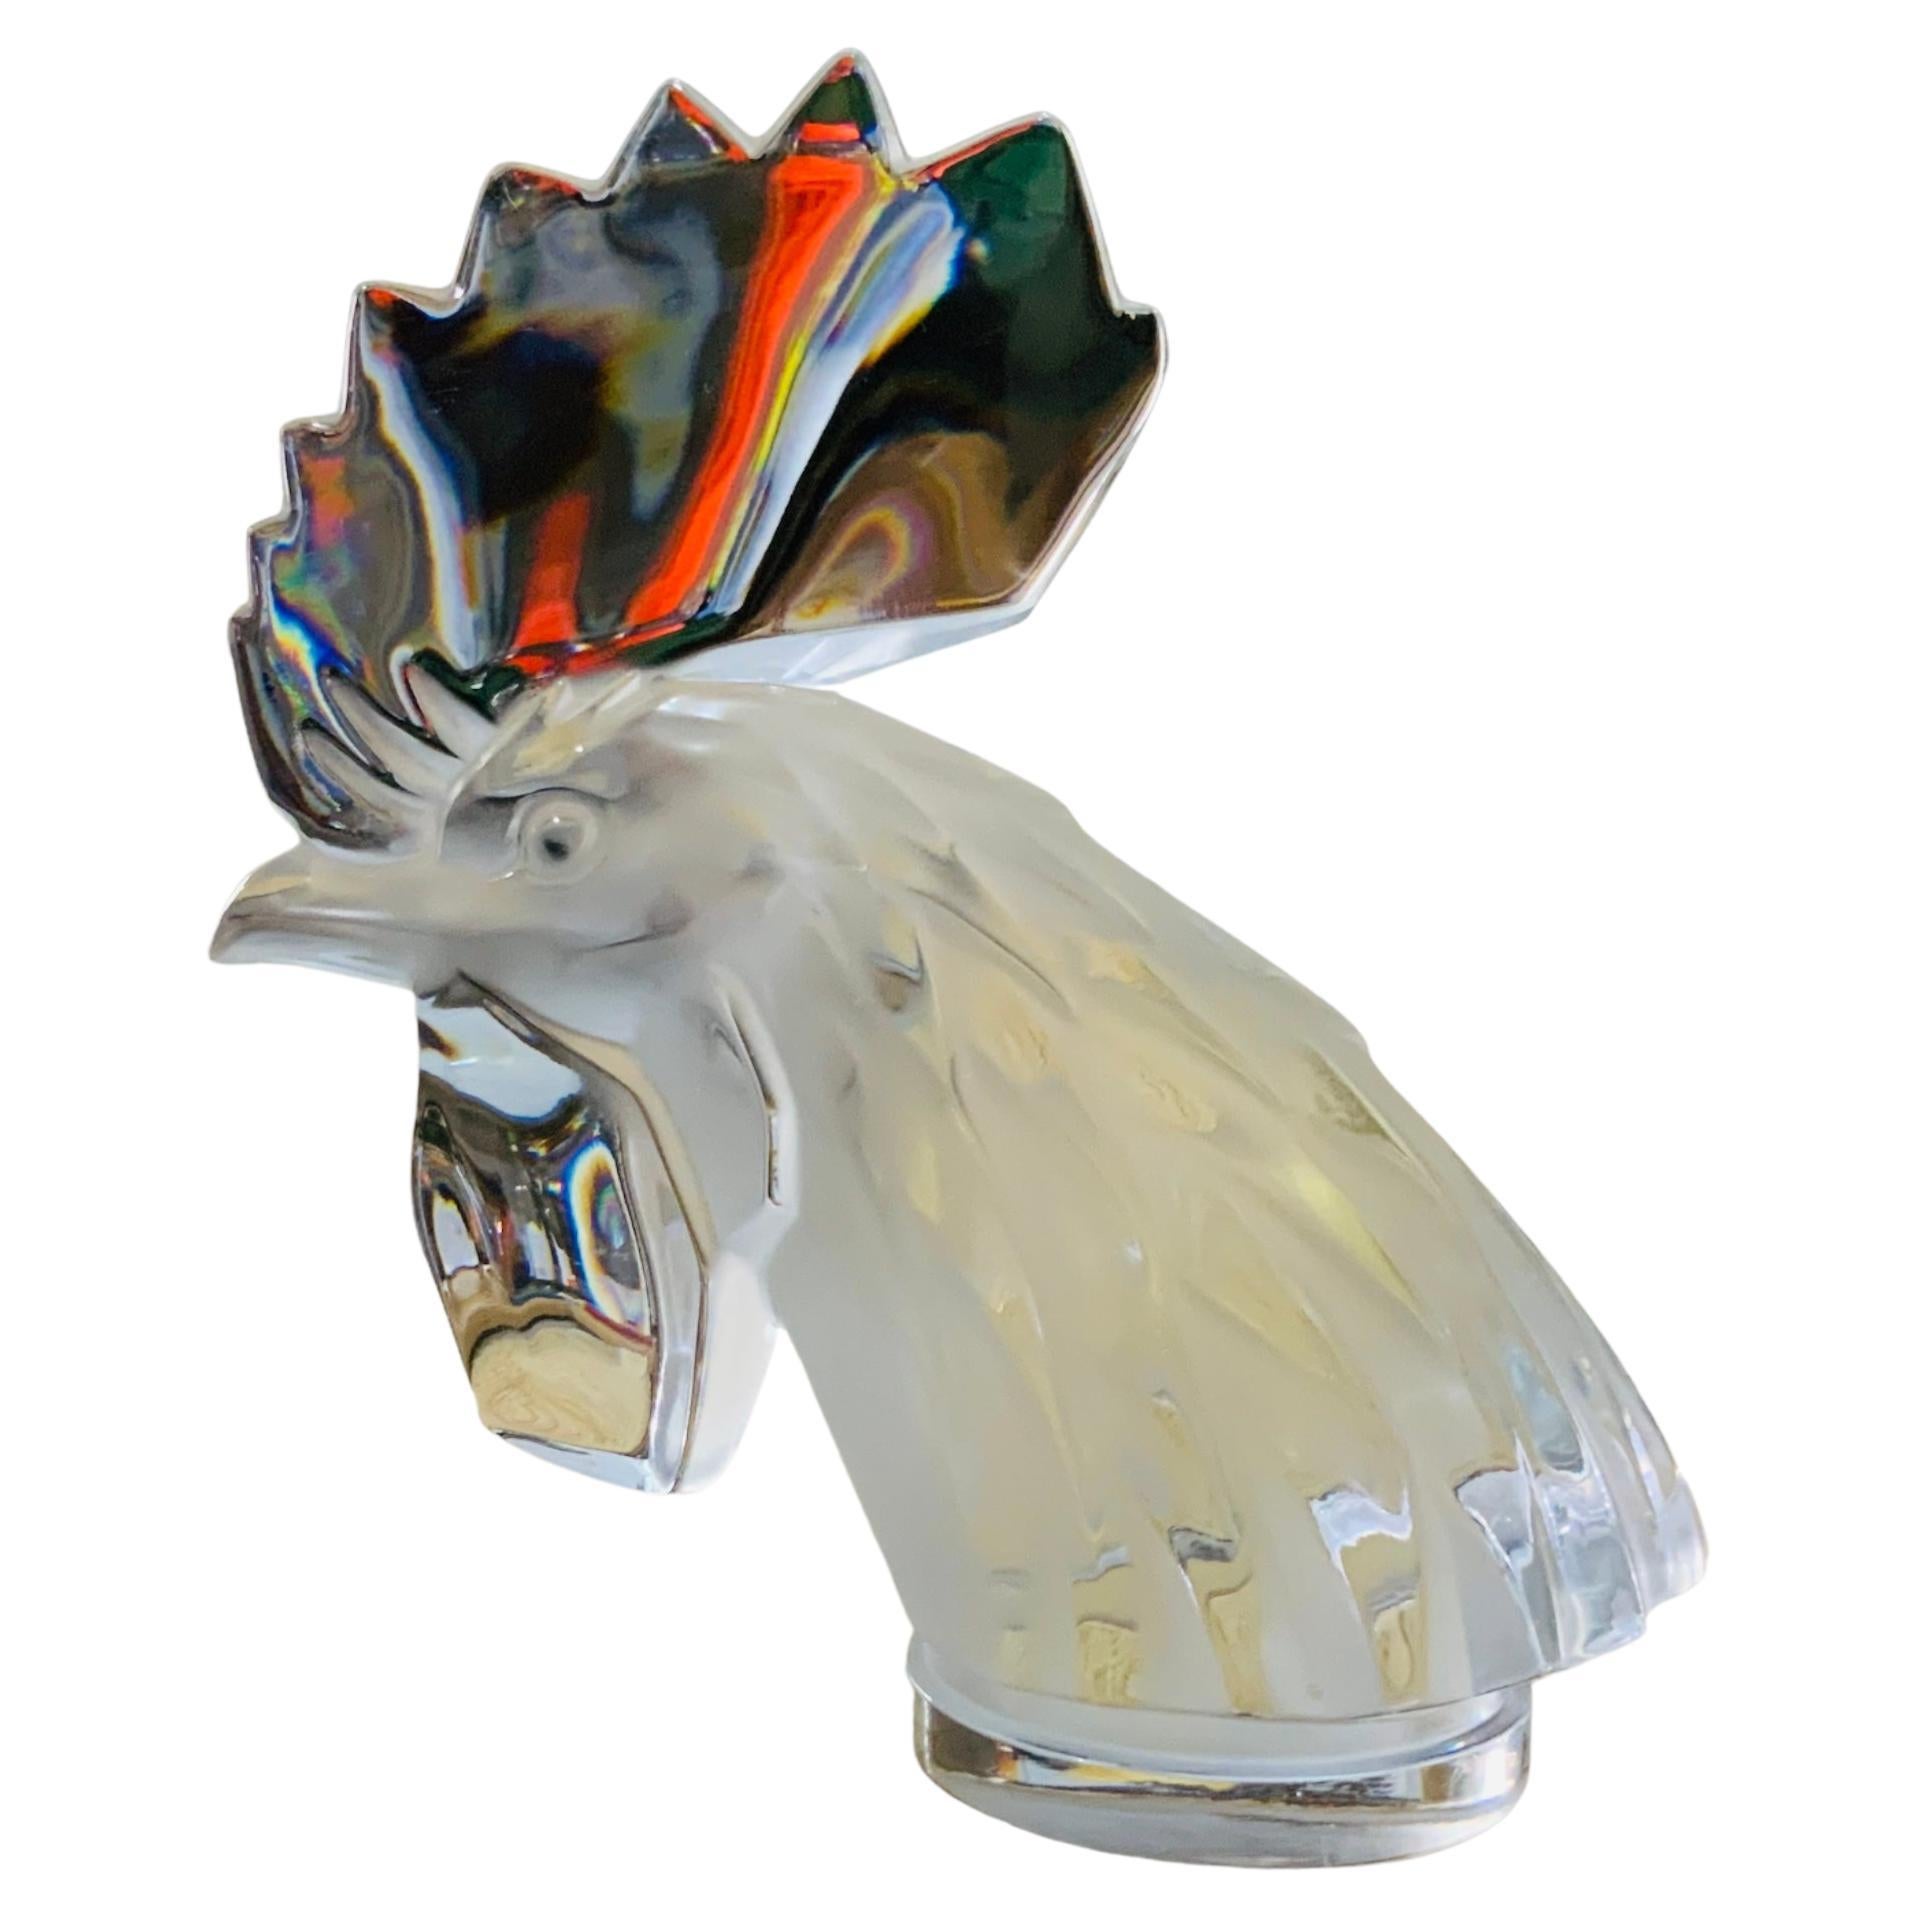 Dies ist ein Lalique Crystal Mascot Rooster Tete de Coq kleine Büste / Briefbeschwerer. Er stellt einen sehr gut gemachten Hahn in klarem Kristall dar. Sie hat die geätzte Punze von Lalique France unterhalb des Sockels.